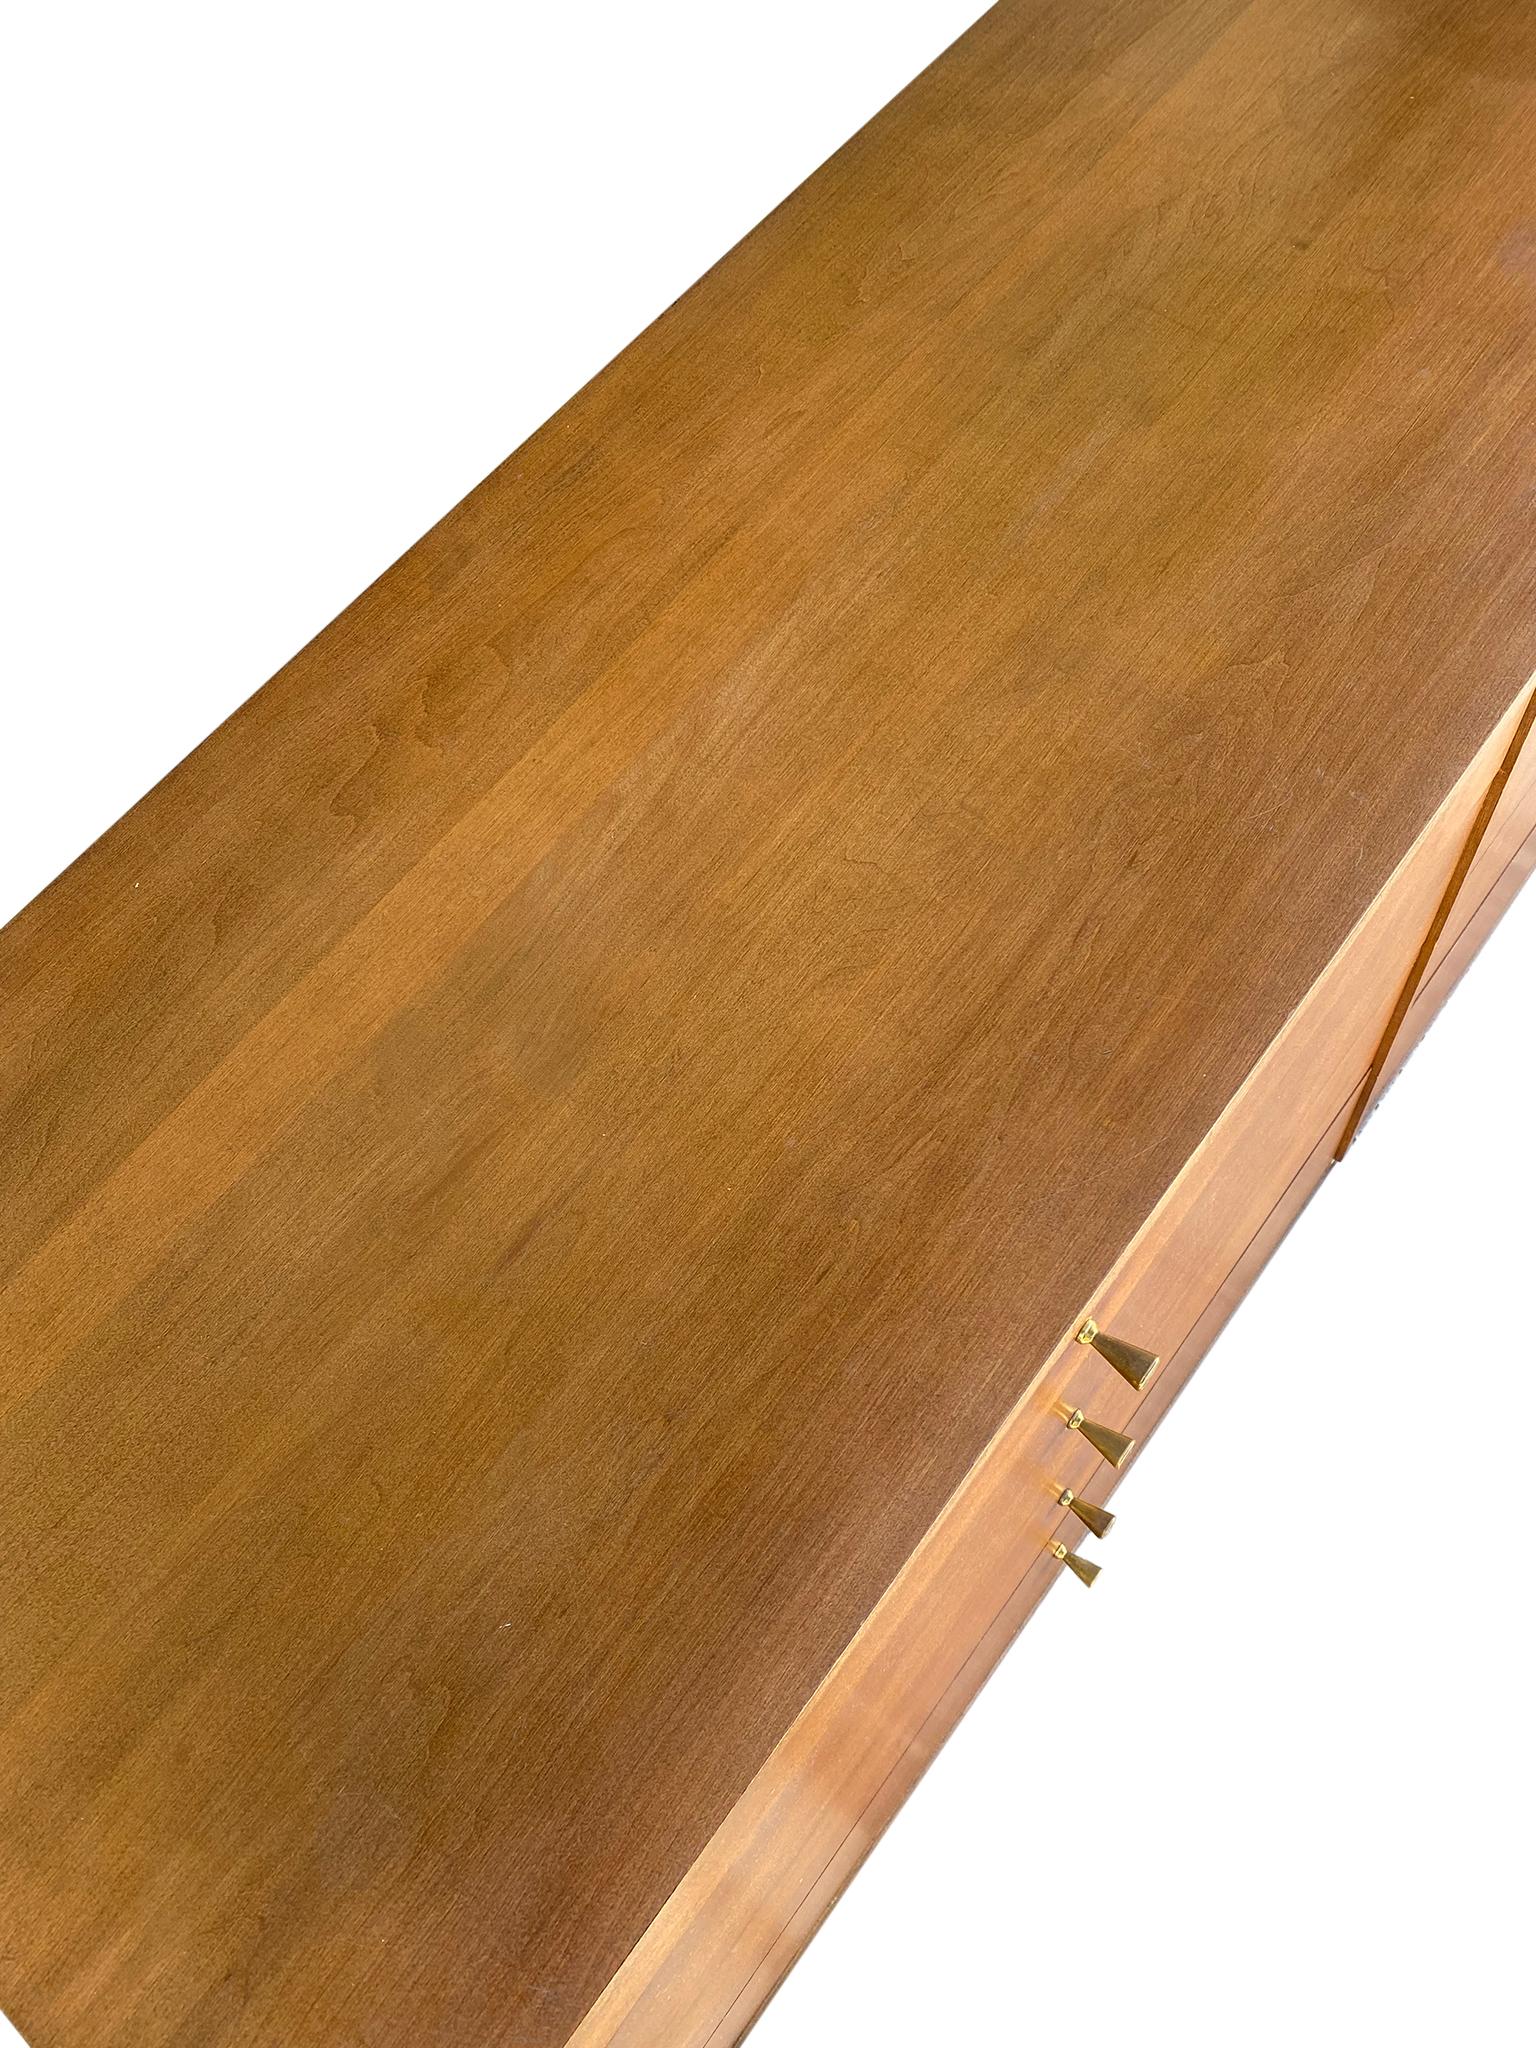 Mid-Century Modern Midcentury Paul McCobb 8-Drawer Dresser Credenza #1507 Maple Brass Walnut Finish